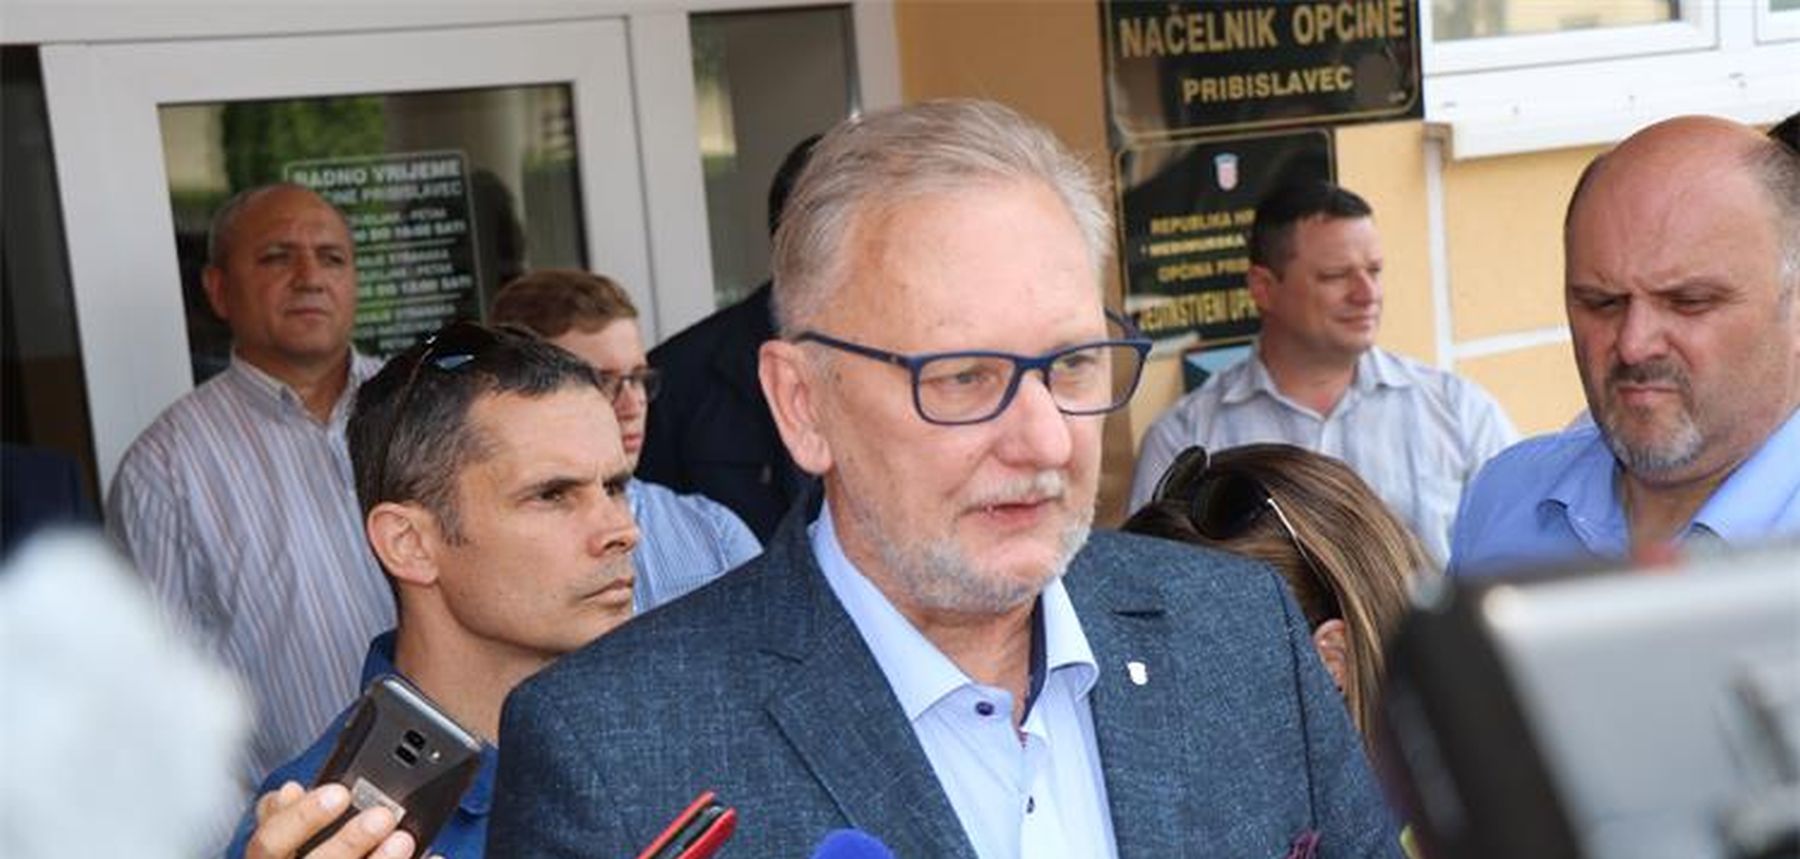 Božinović: rješenje za Međimurje nije u represiji, već u kvalitetnom obrazovanju